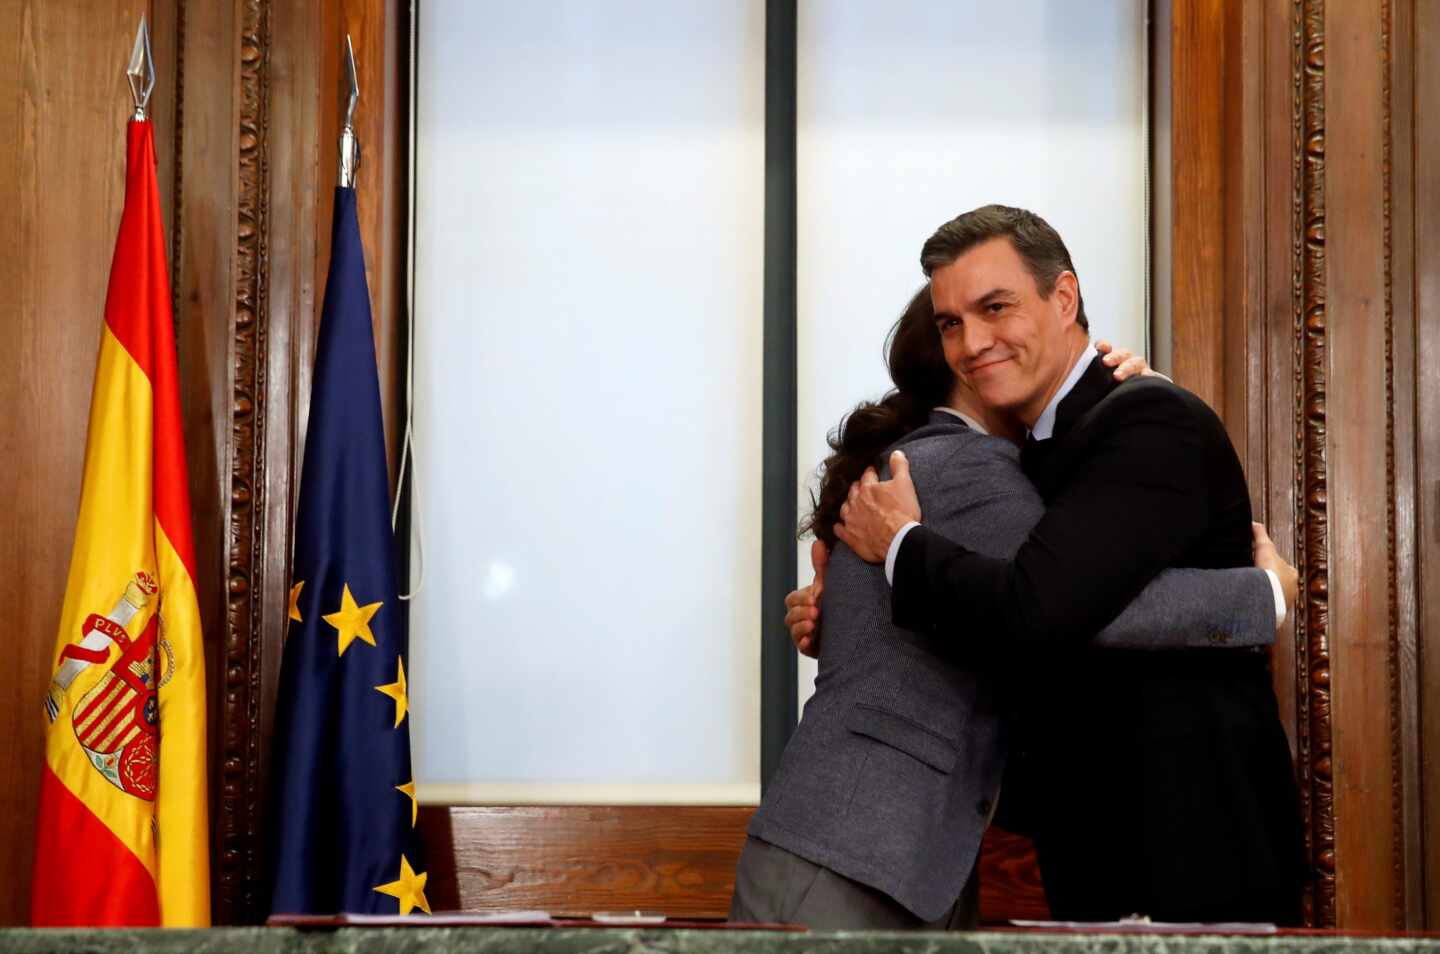 Pedro Sánchez y Pablo Iglesias se abrazan en la firma del acuerdo programático.